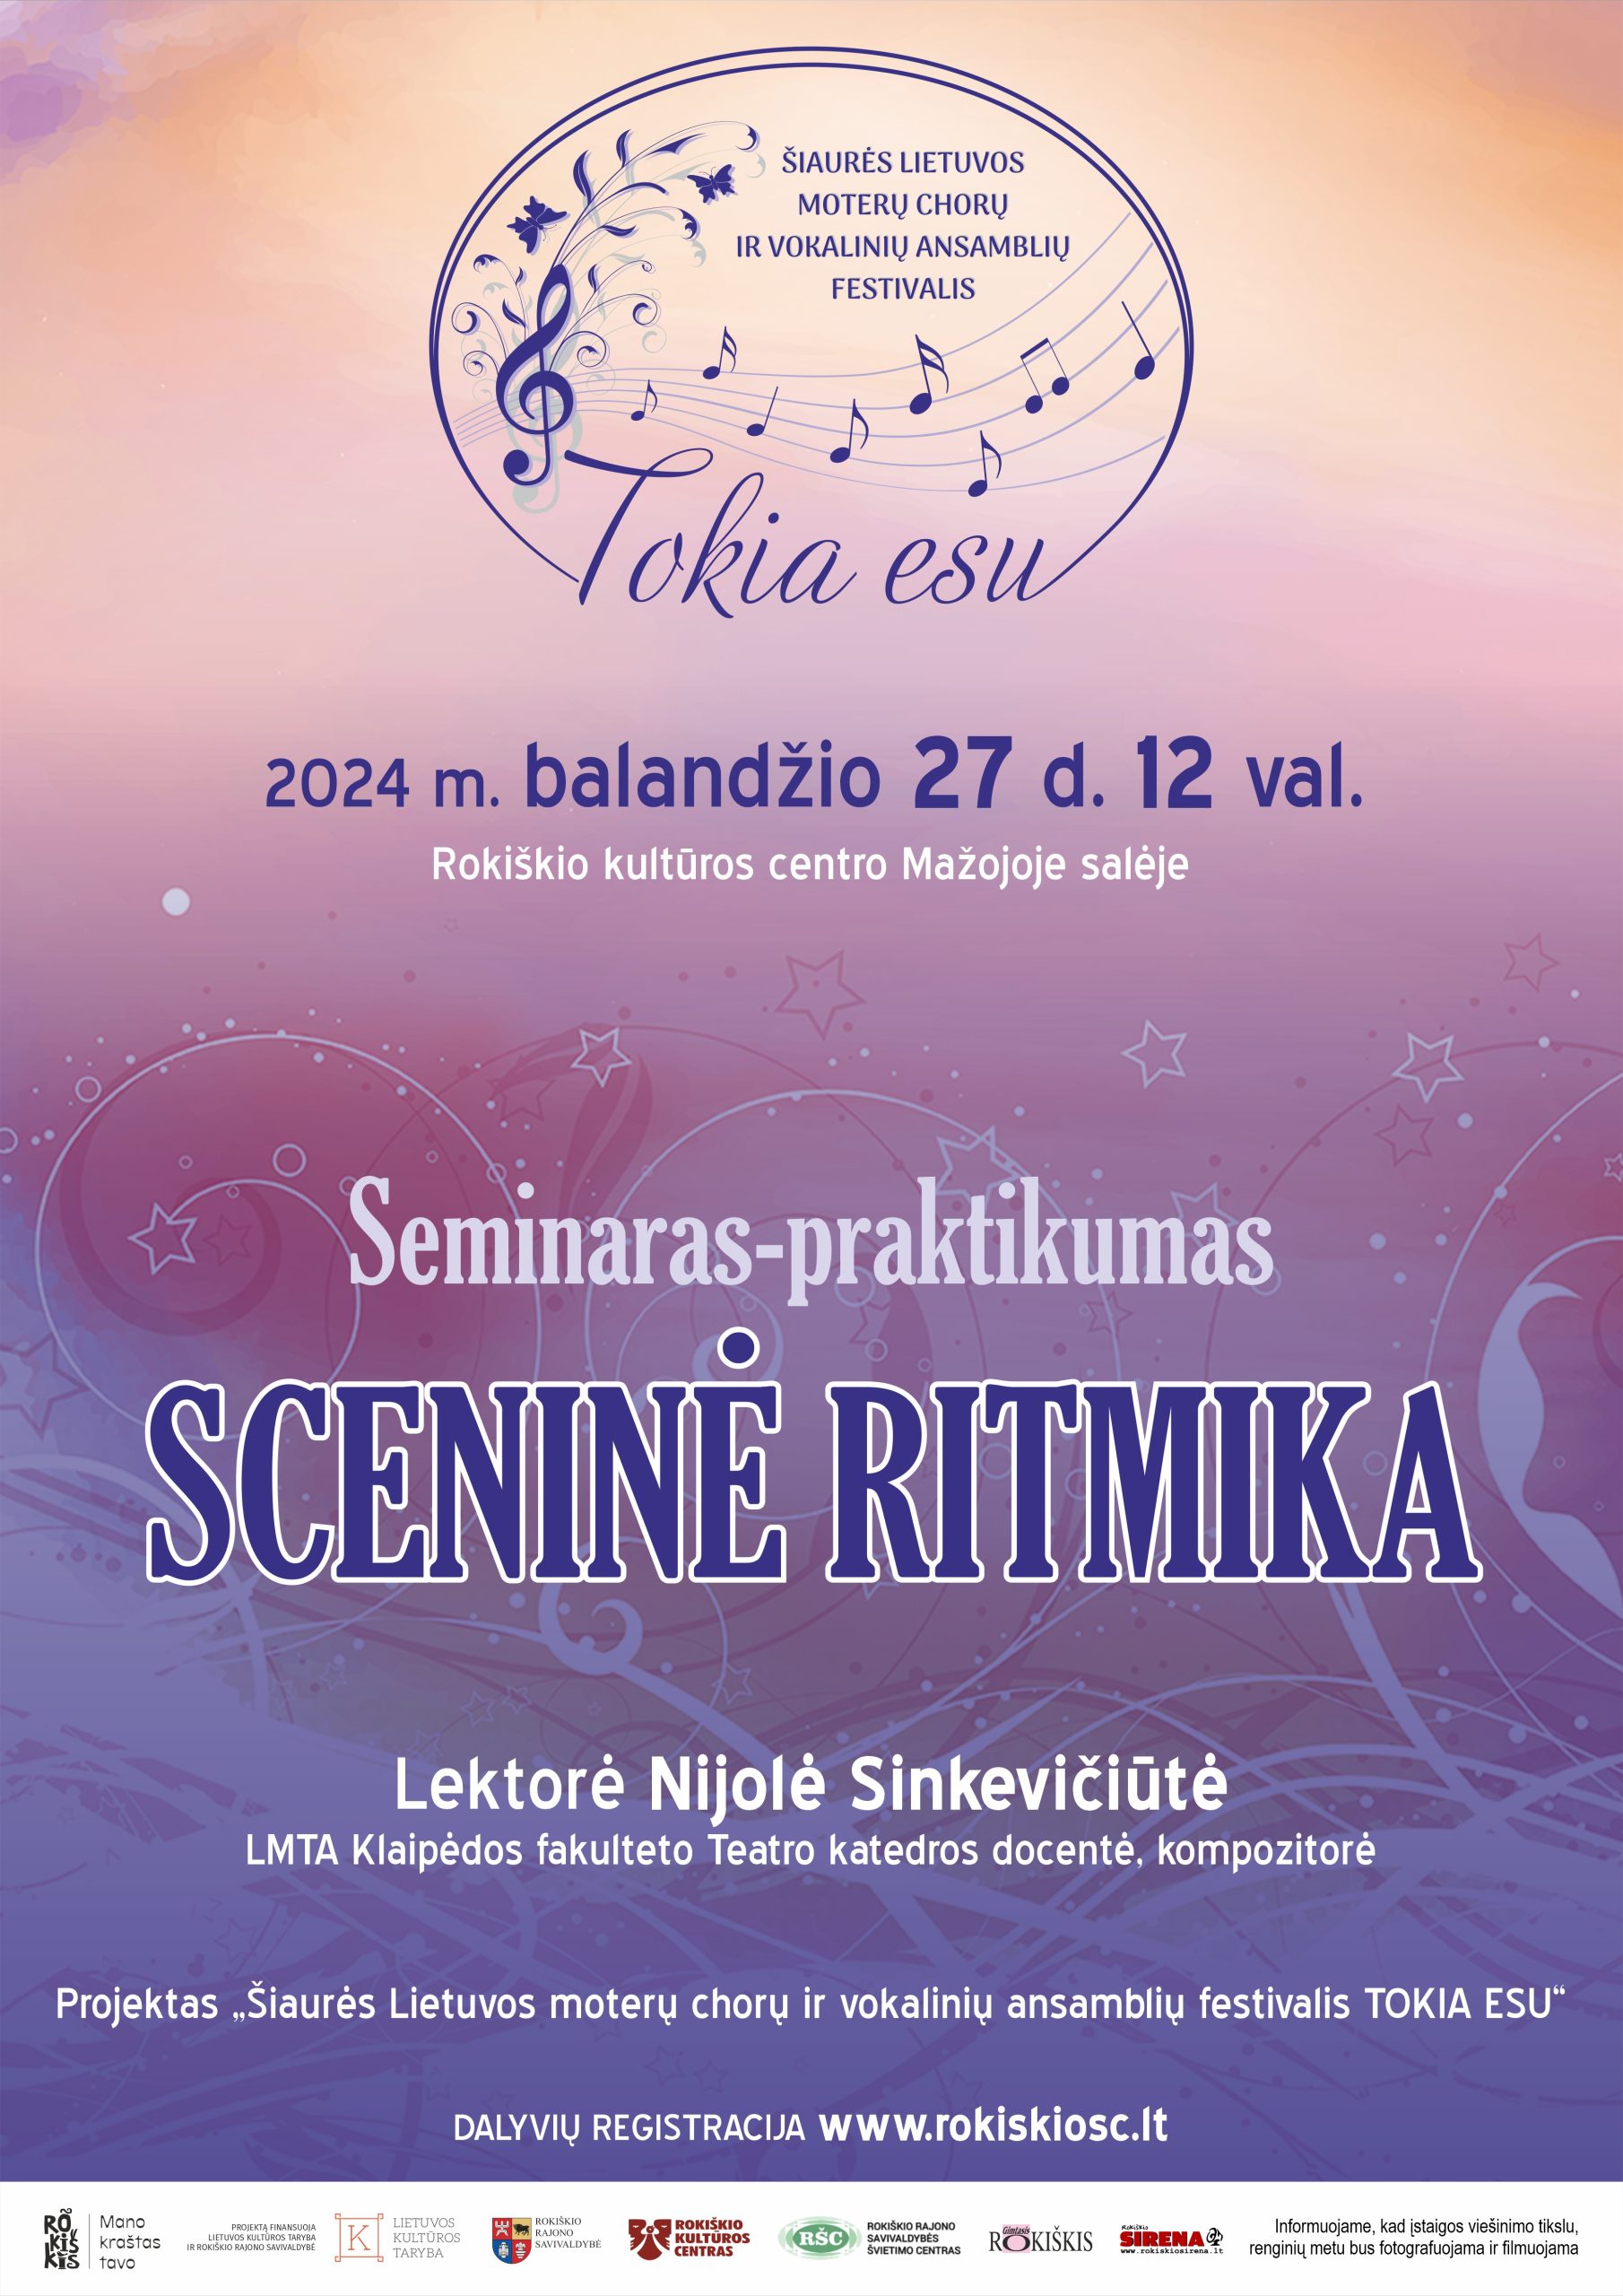 Seminaras- praktikumas Sceninė ritmika